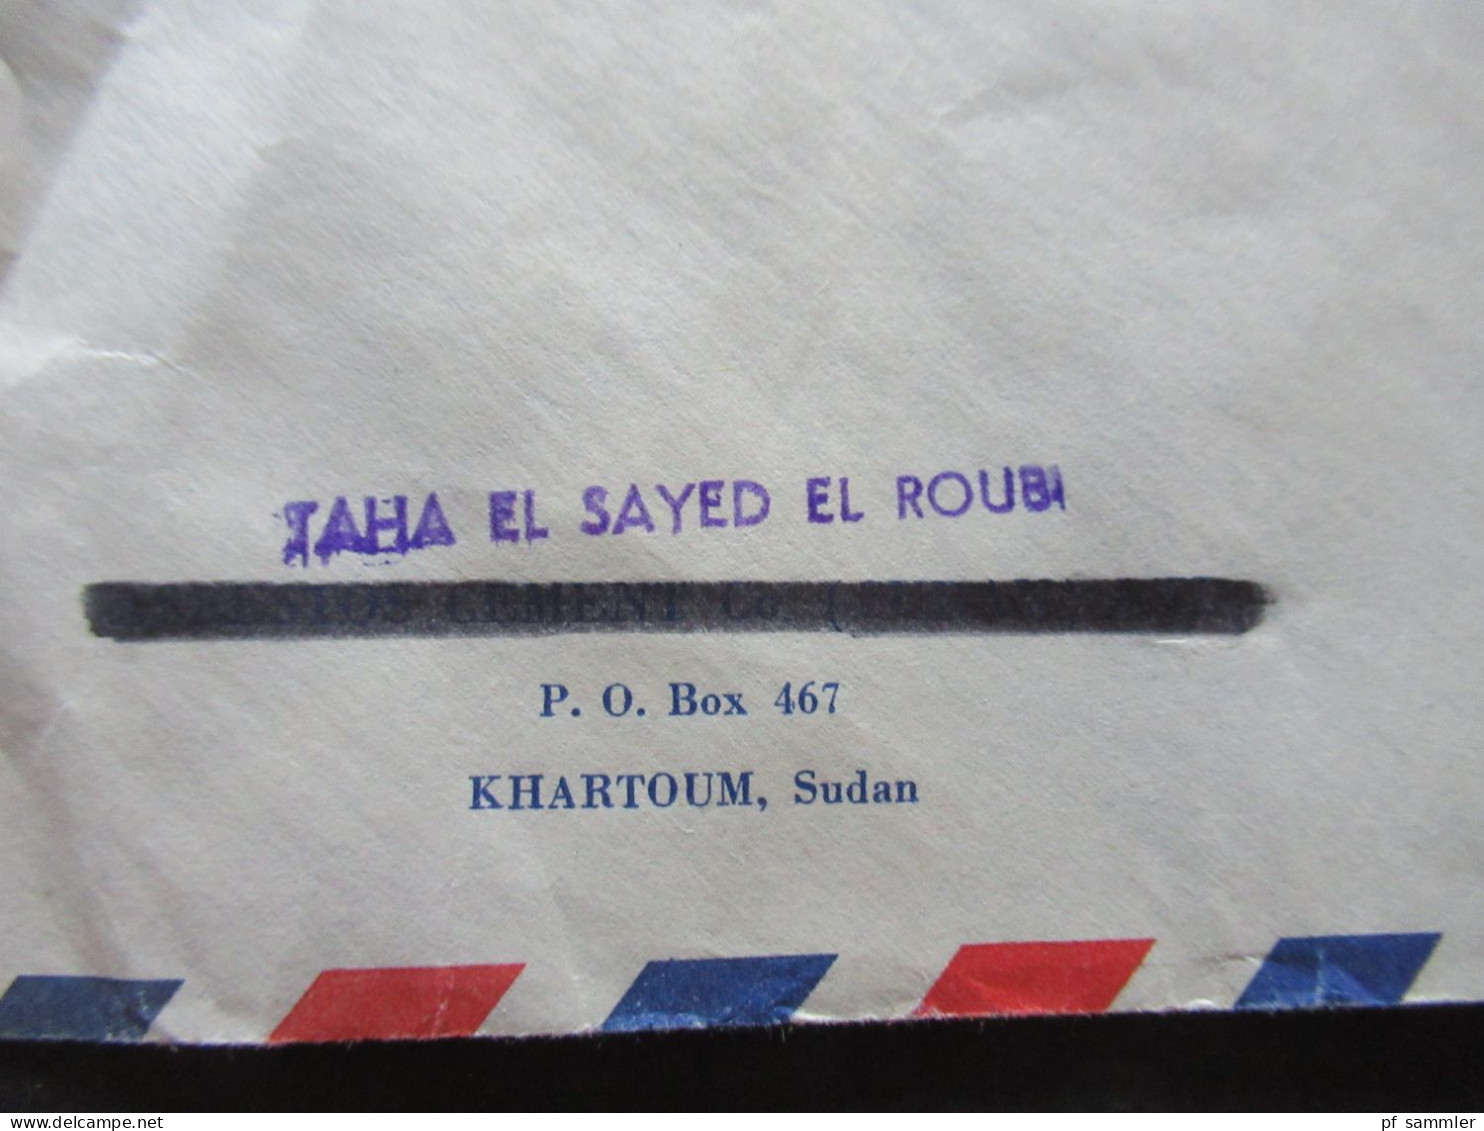 Afrika Sudan 1966 Air Mail Cover Stempel Khartoum Mails Sudan Umschlag Violetter Stempel Taha El Sayed El Roubi - Soudan (1954-...)